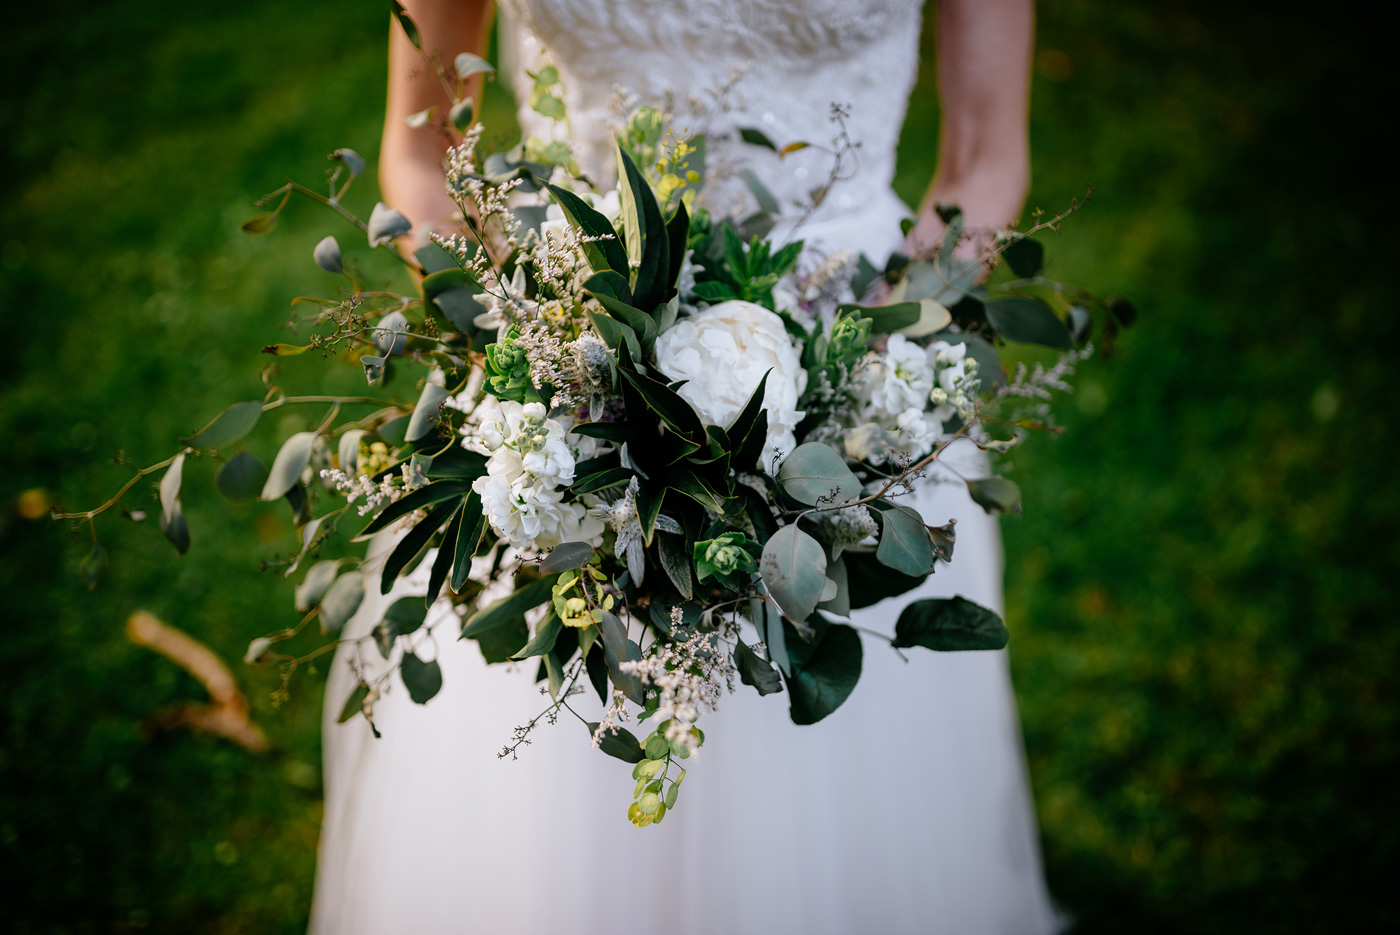 west farm flowers lewisburg wv wedding bridal bouquet